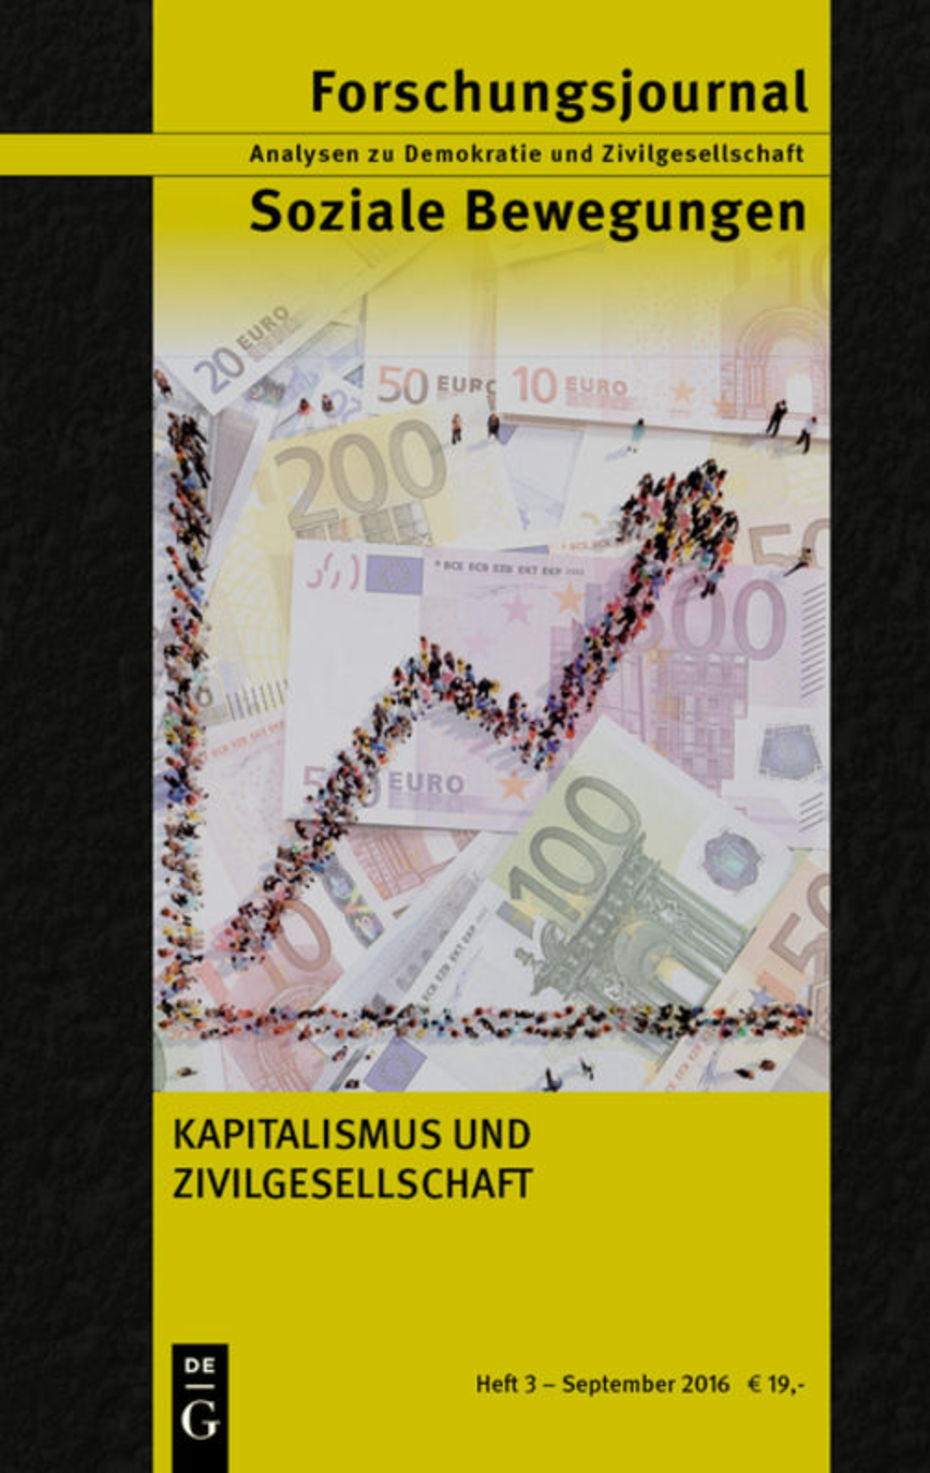 Forschungsjournal Soziale Bewegungen (Cover)